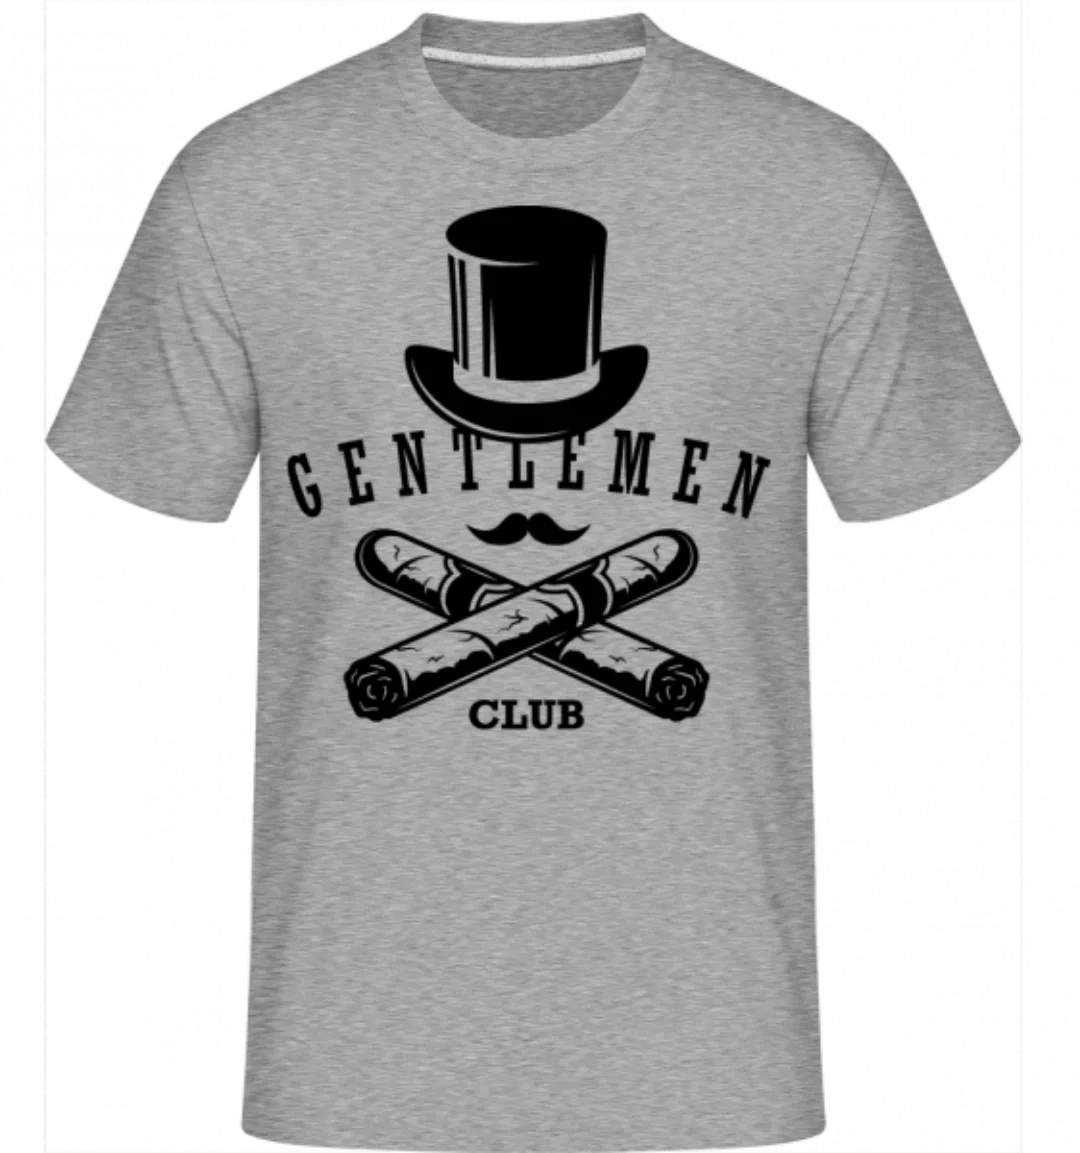 Gentlemen Club · Shirtinator Männer T-Shirt günstig online kaufen